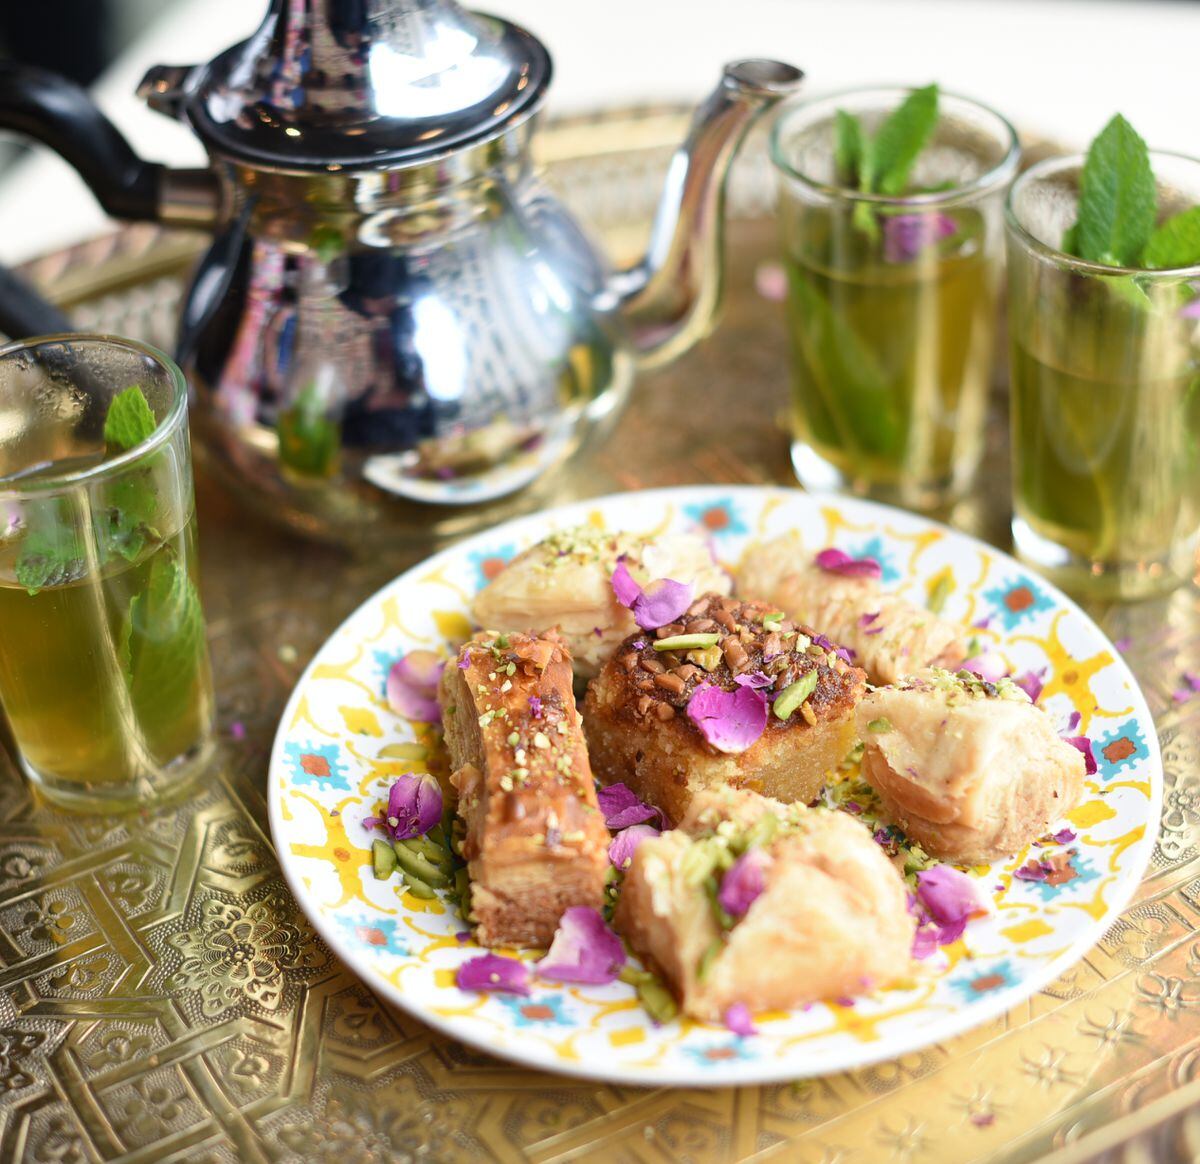 Time for tea –  fresh mint tea with baklava 